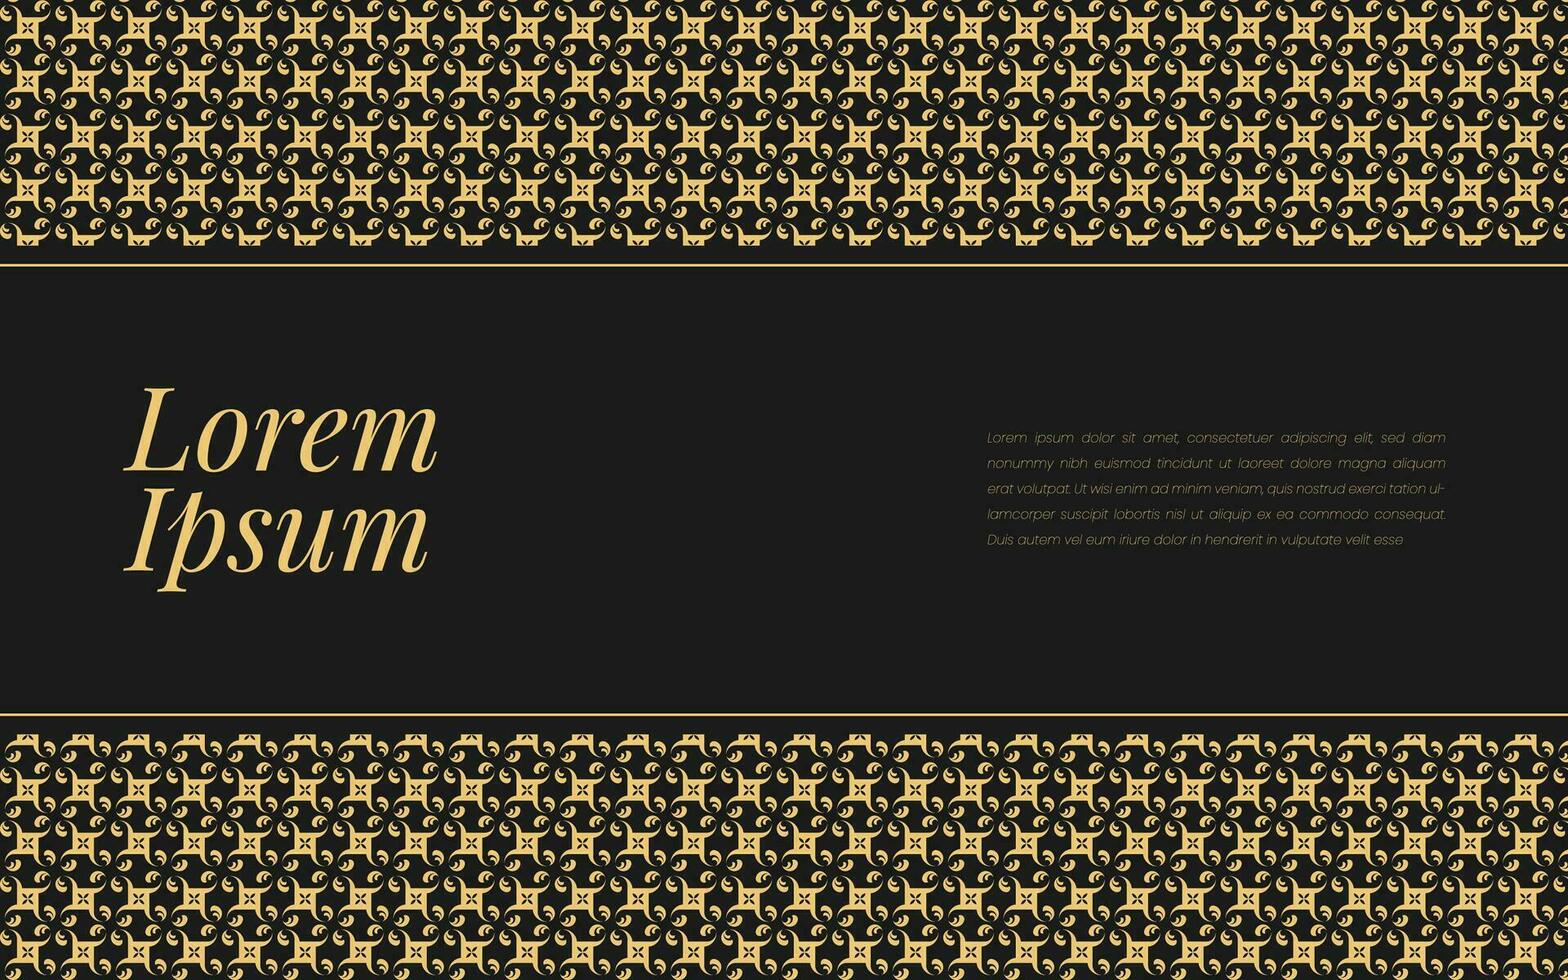 guld och svart mönster på abstrakt bakgrund geometrisk mosaik- i lyxig prydnad stil. vektor